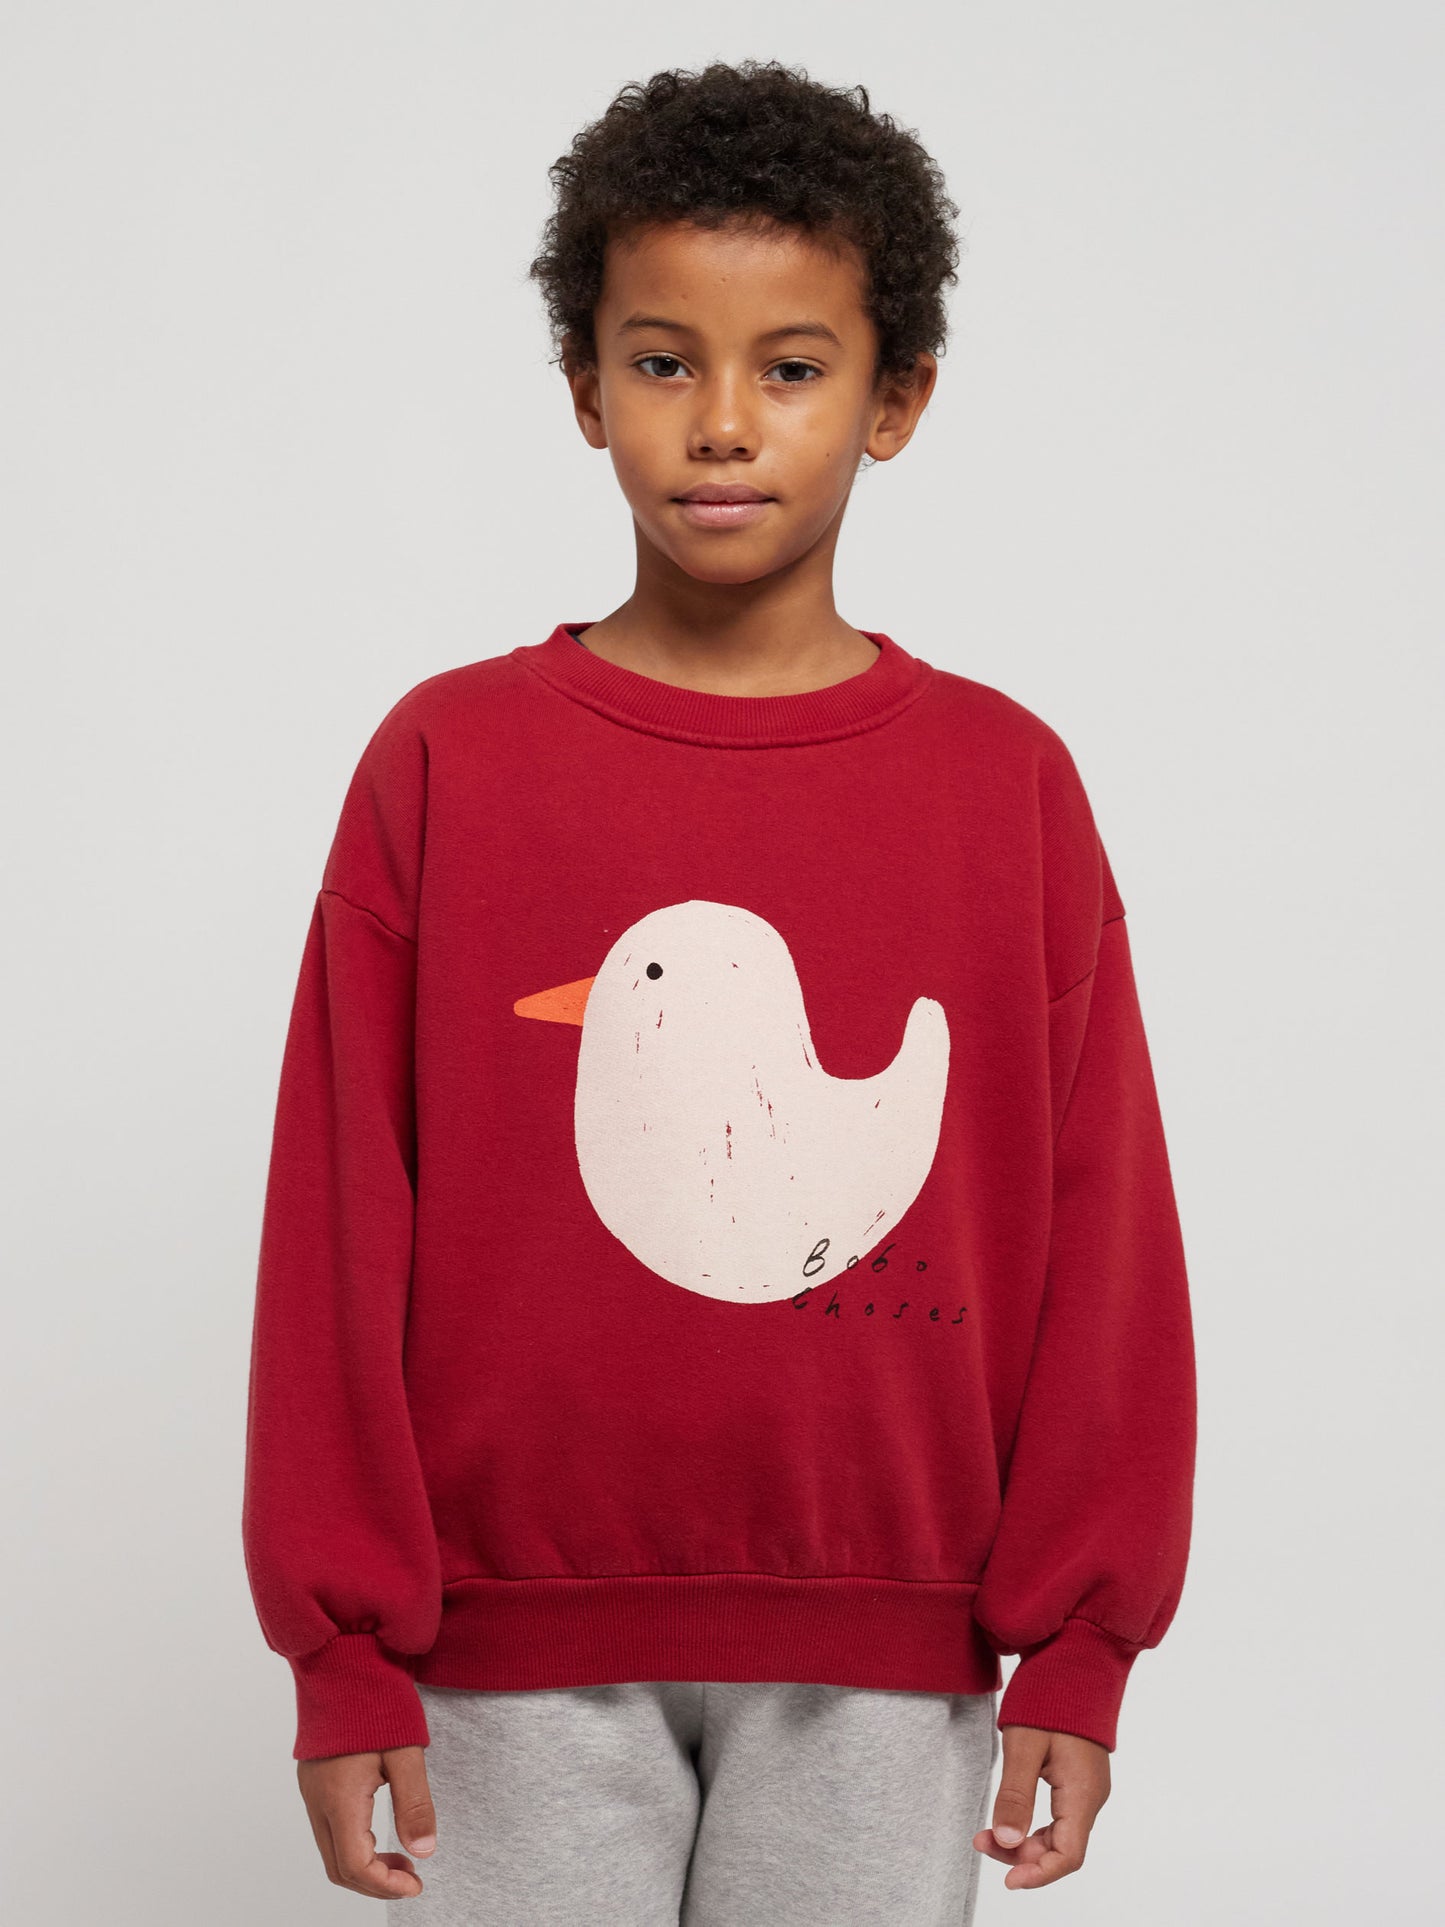 Rubber Duck sweatshirt